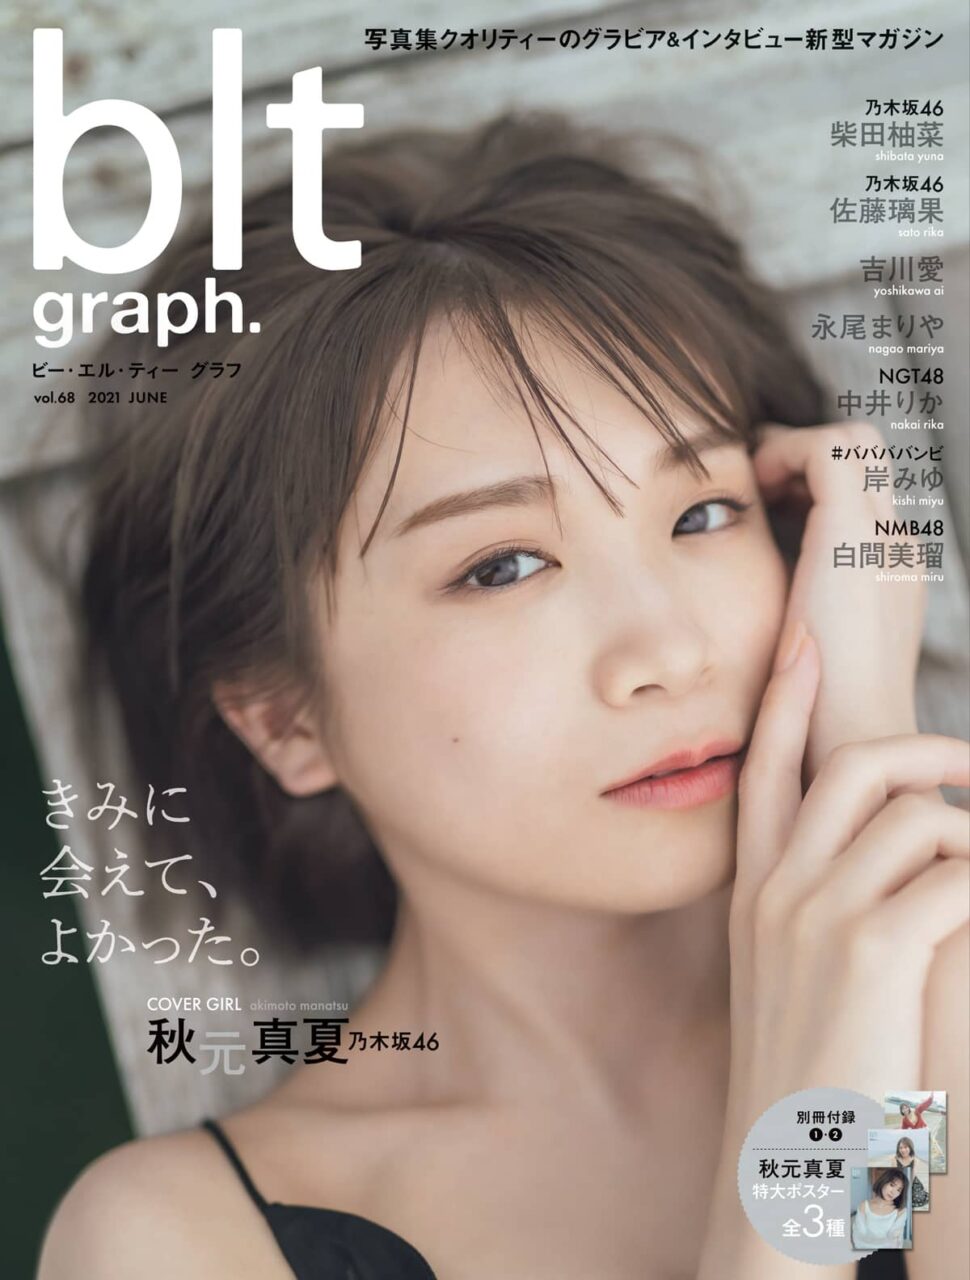 乃木坂46 秋元真夏「blt graph. vol.68」表紙解禁！6/16発売！